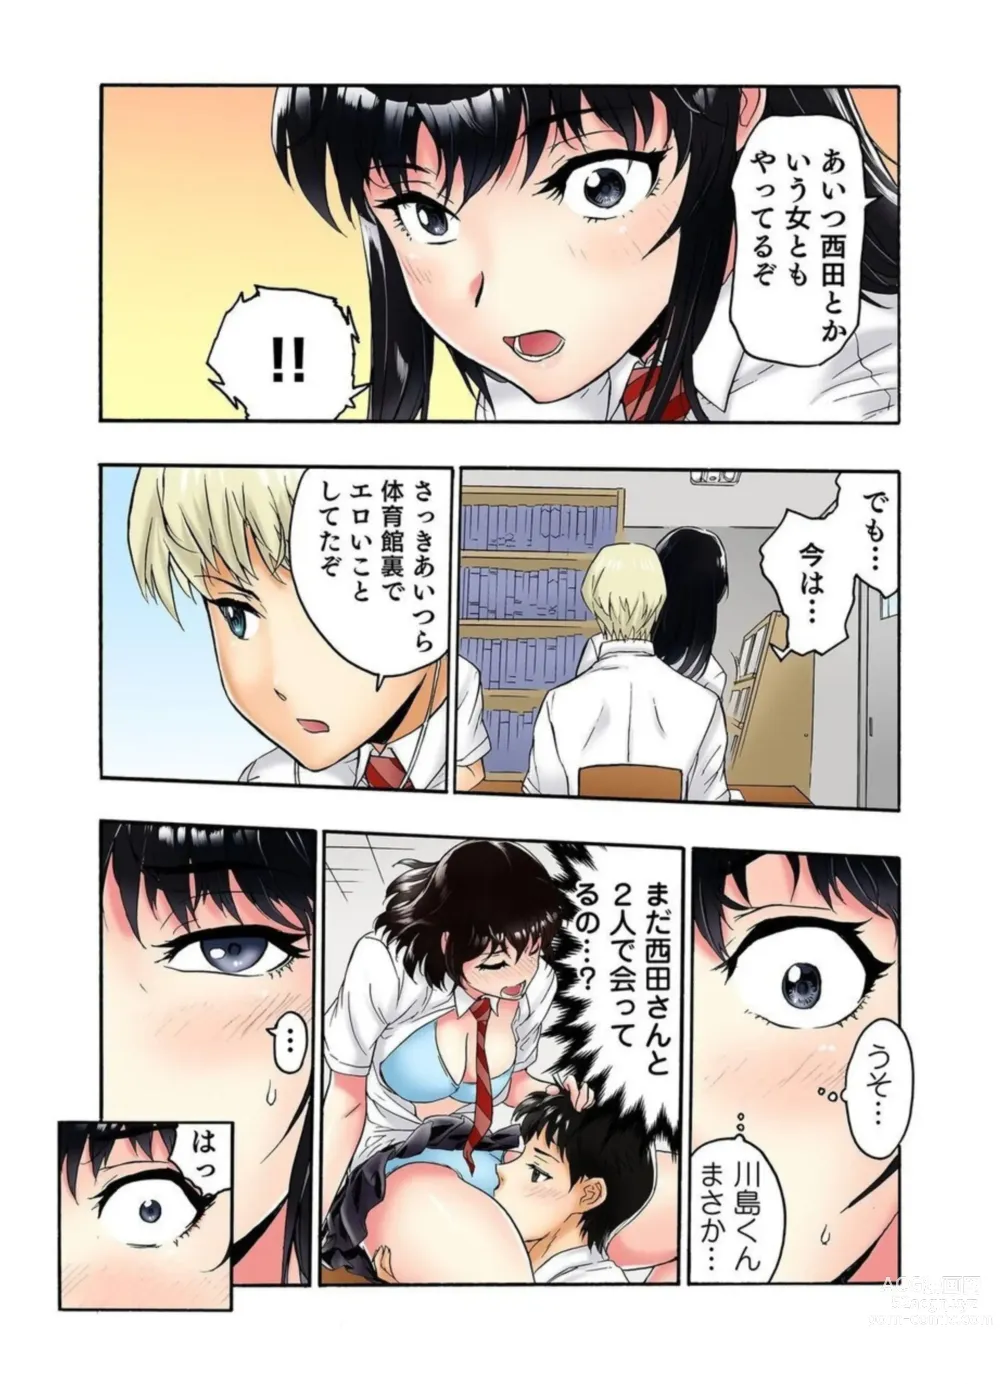 Page 47 of manga Tenkousei no Seki ga Ore no Hiza no Ue ni Kimatta no de Hame Temita Dai 2-bu 1-2